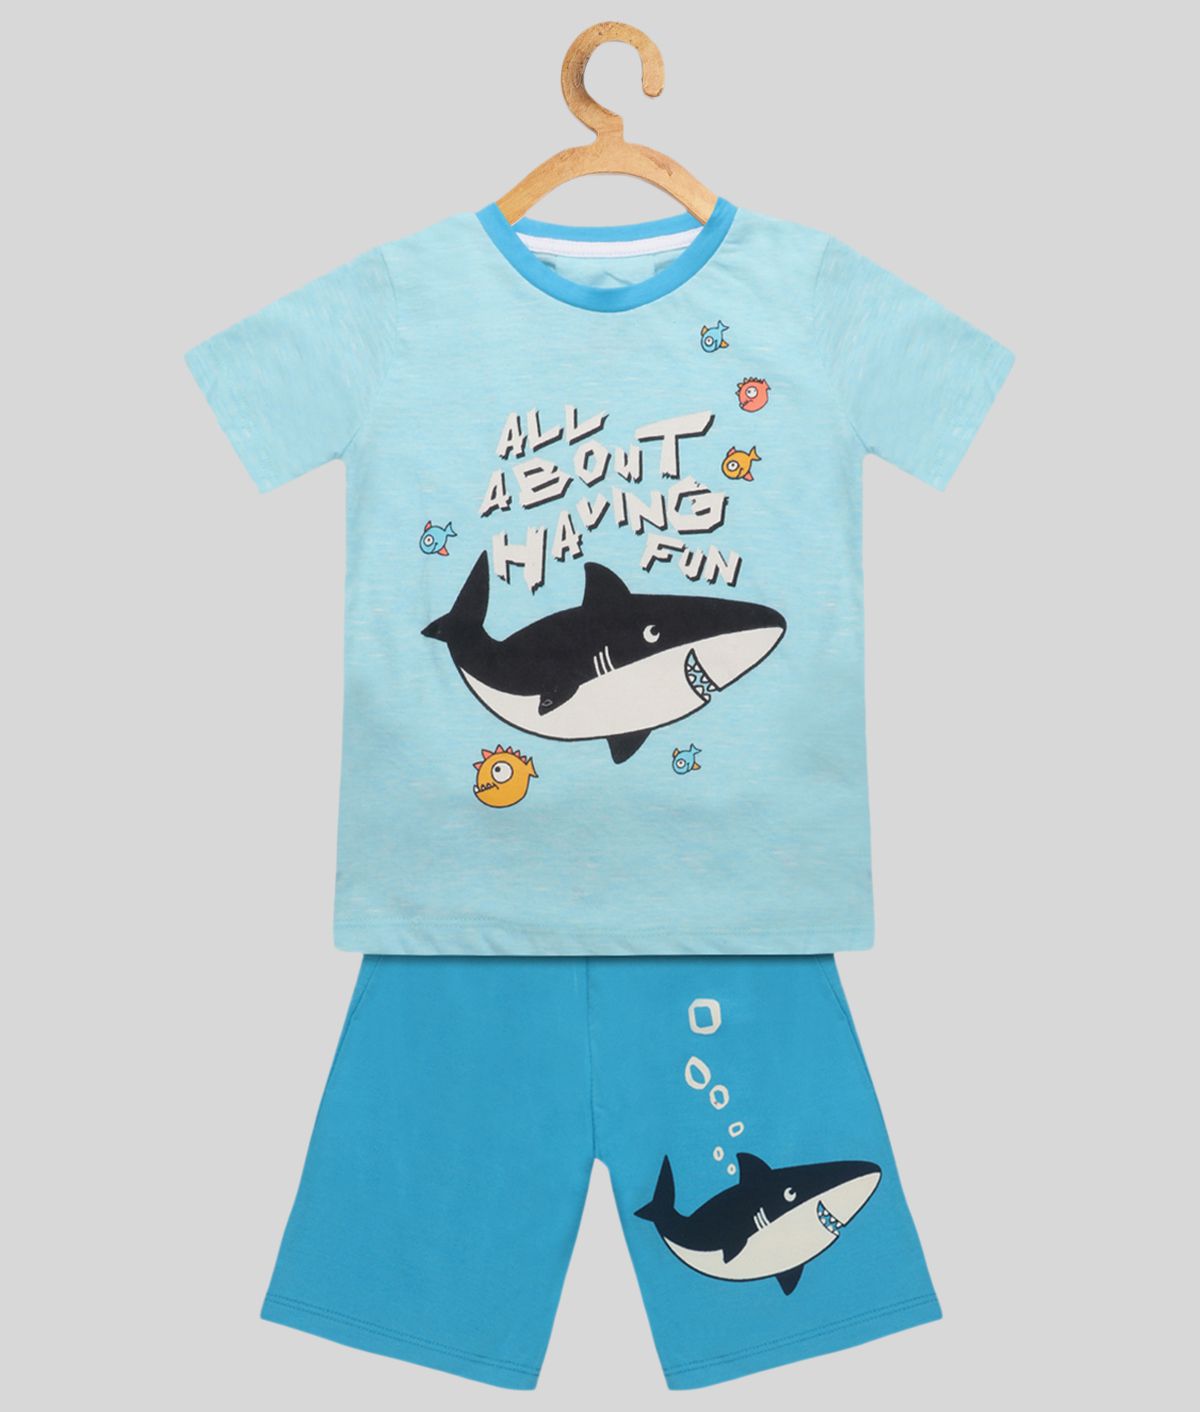 Lazy Shark - Blue Cotton Blend Boy's T-Shirt & Shorts ( Pack of 1 )